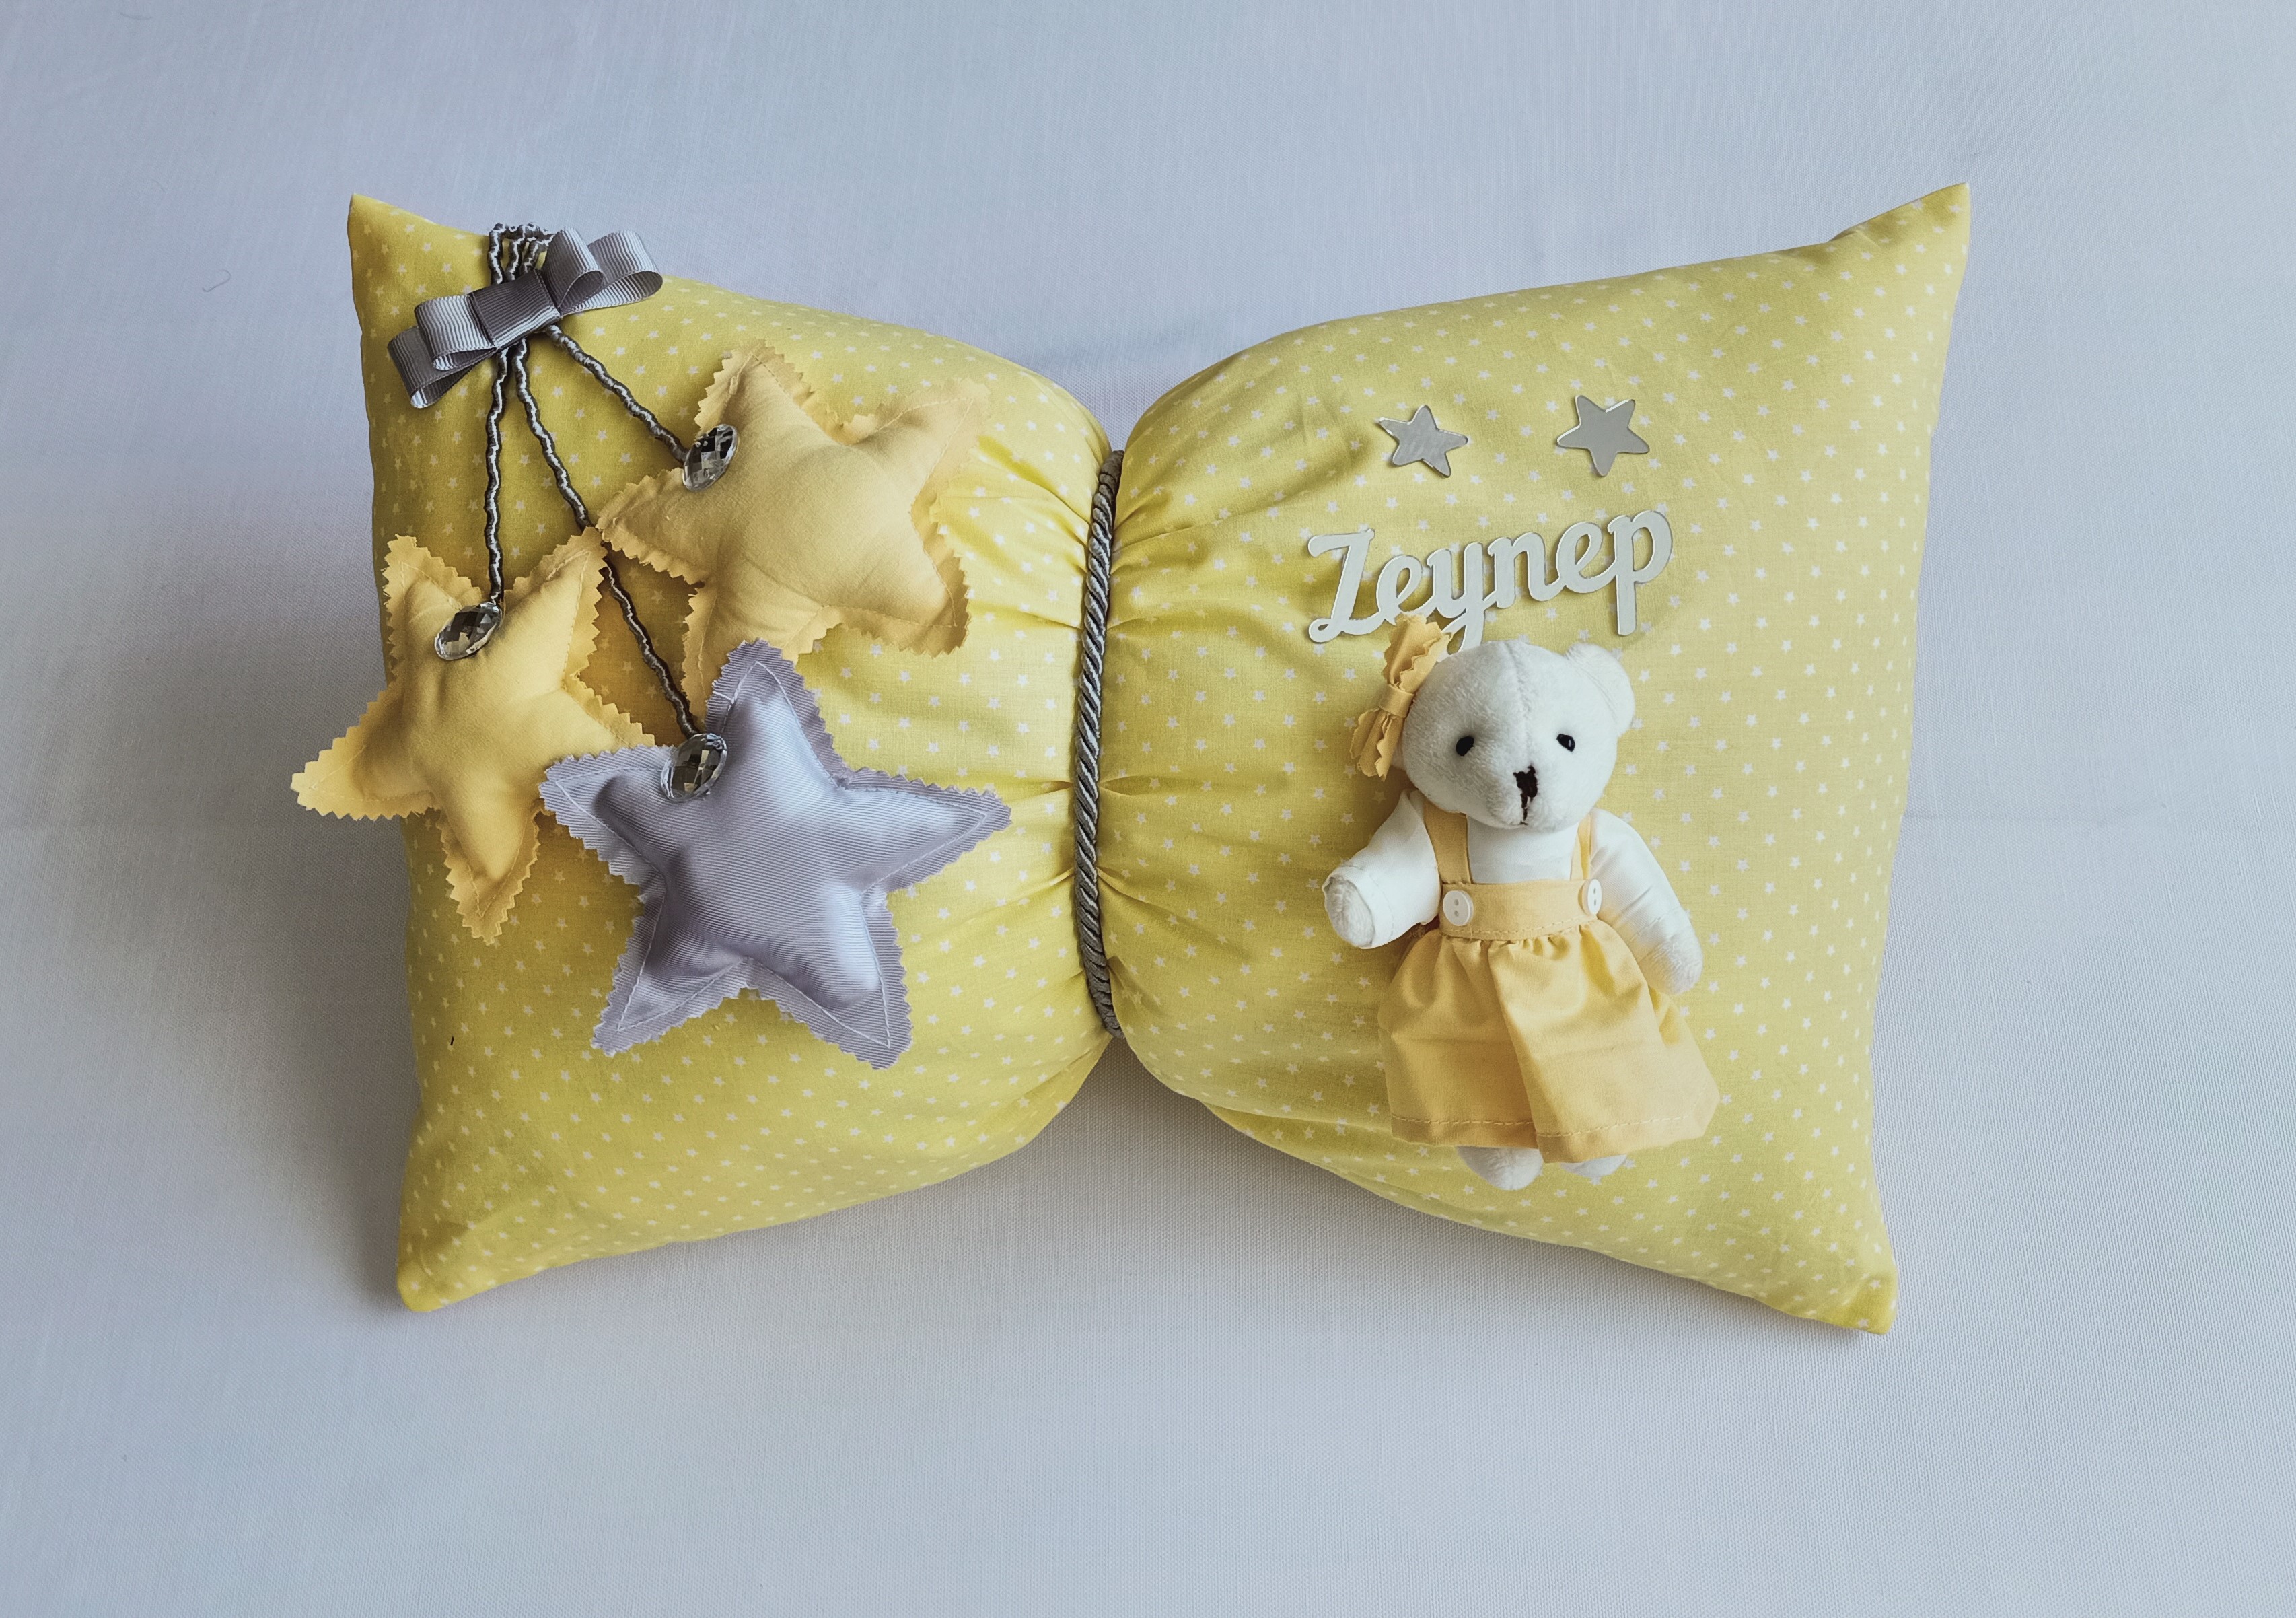 moms and babies Momsandbabies Sarı Renkli Kız Bebek Dekoratif Yastık (Takı Yastığı) (Sarı)